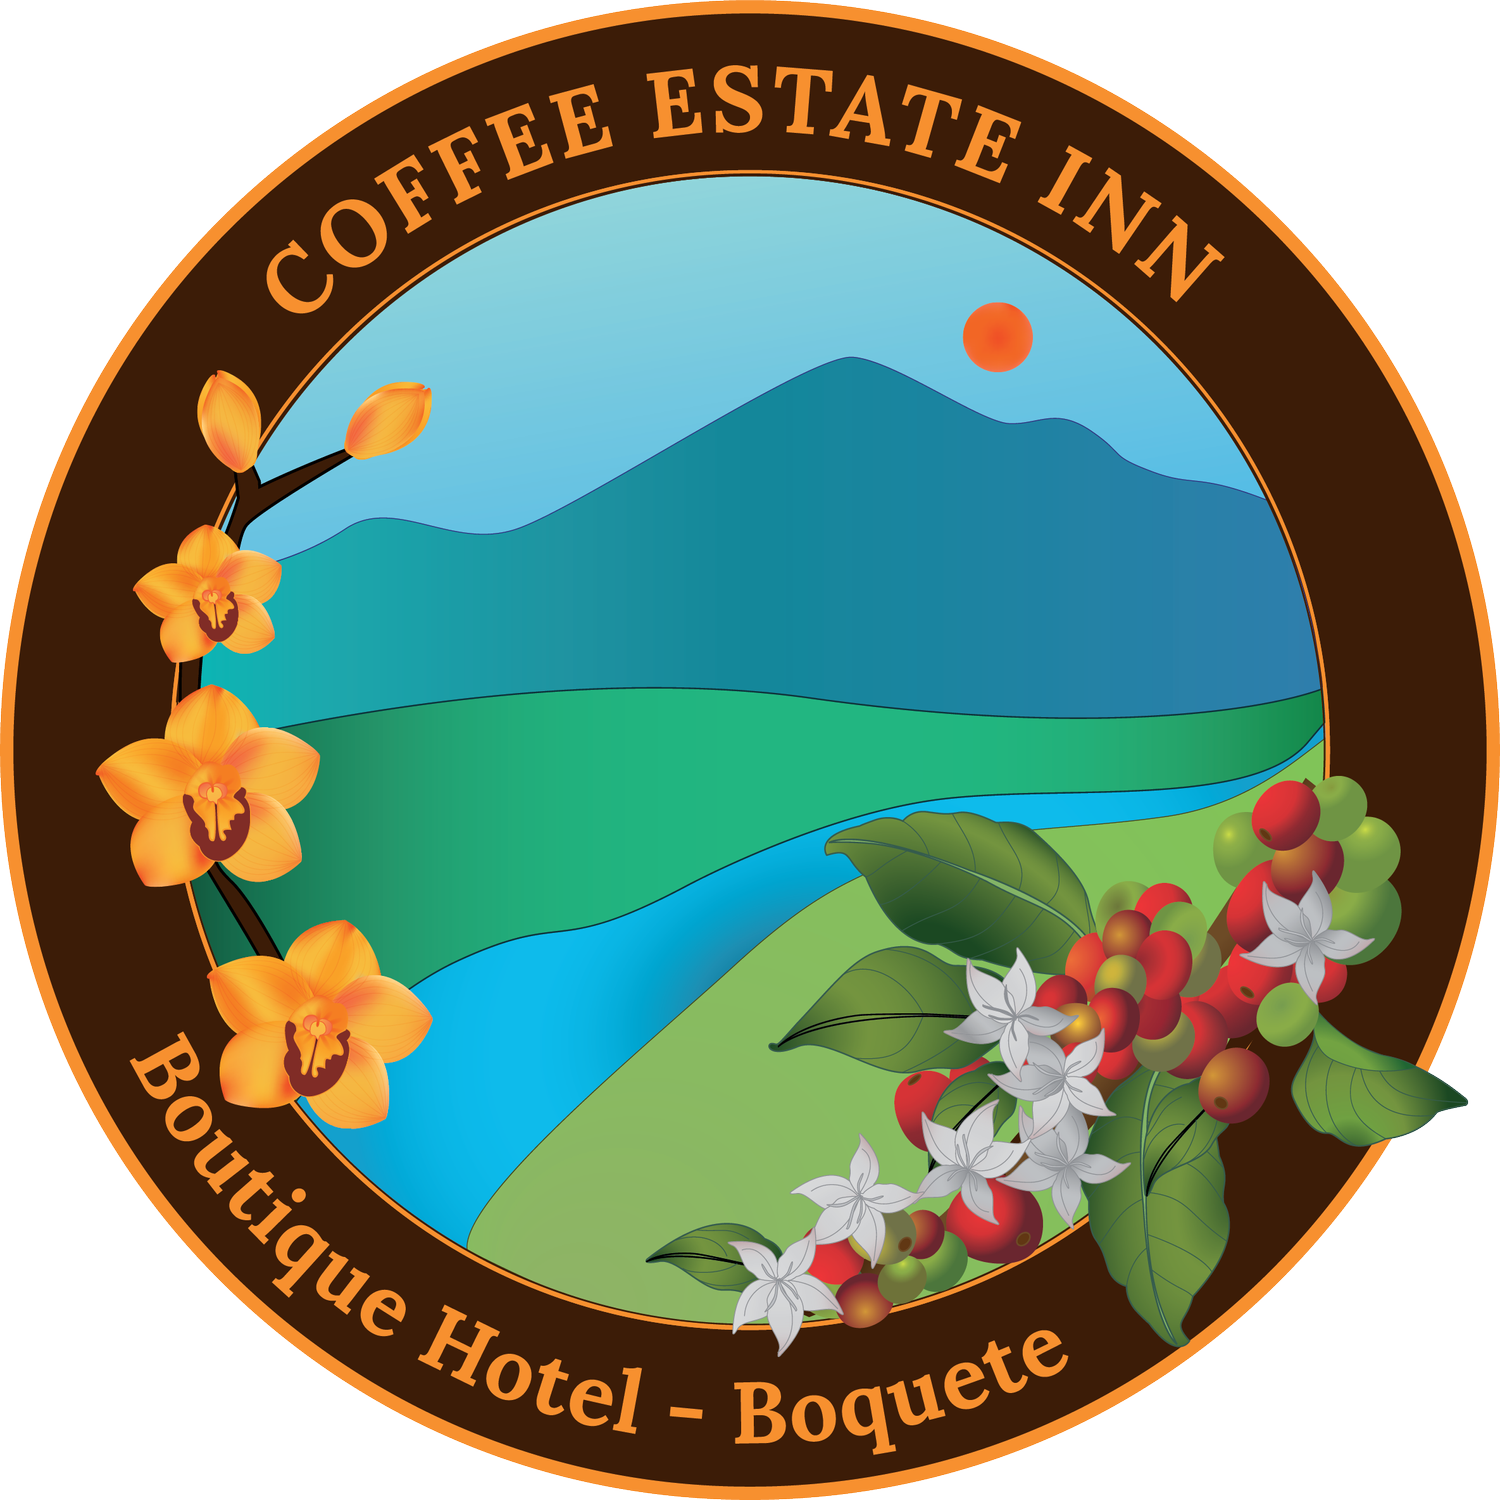 Coffee Estate Inn